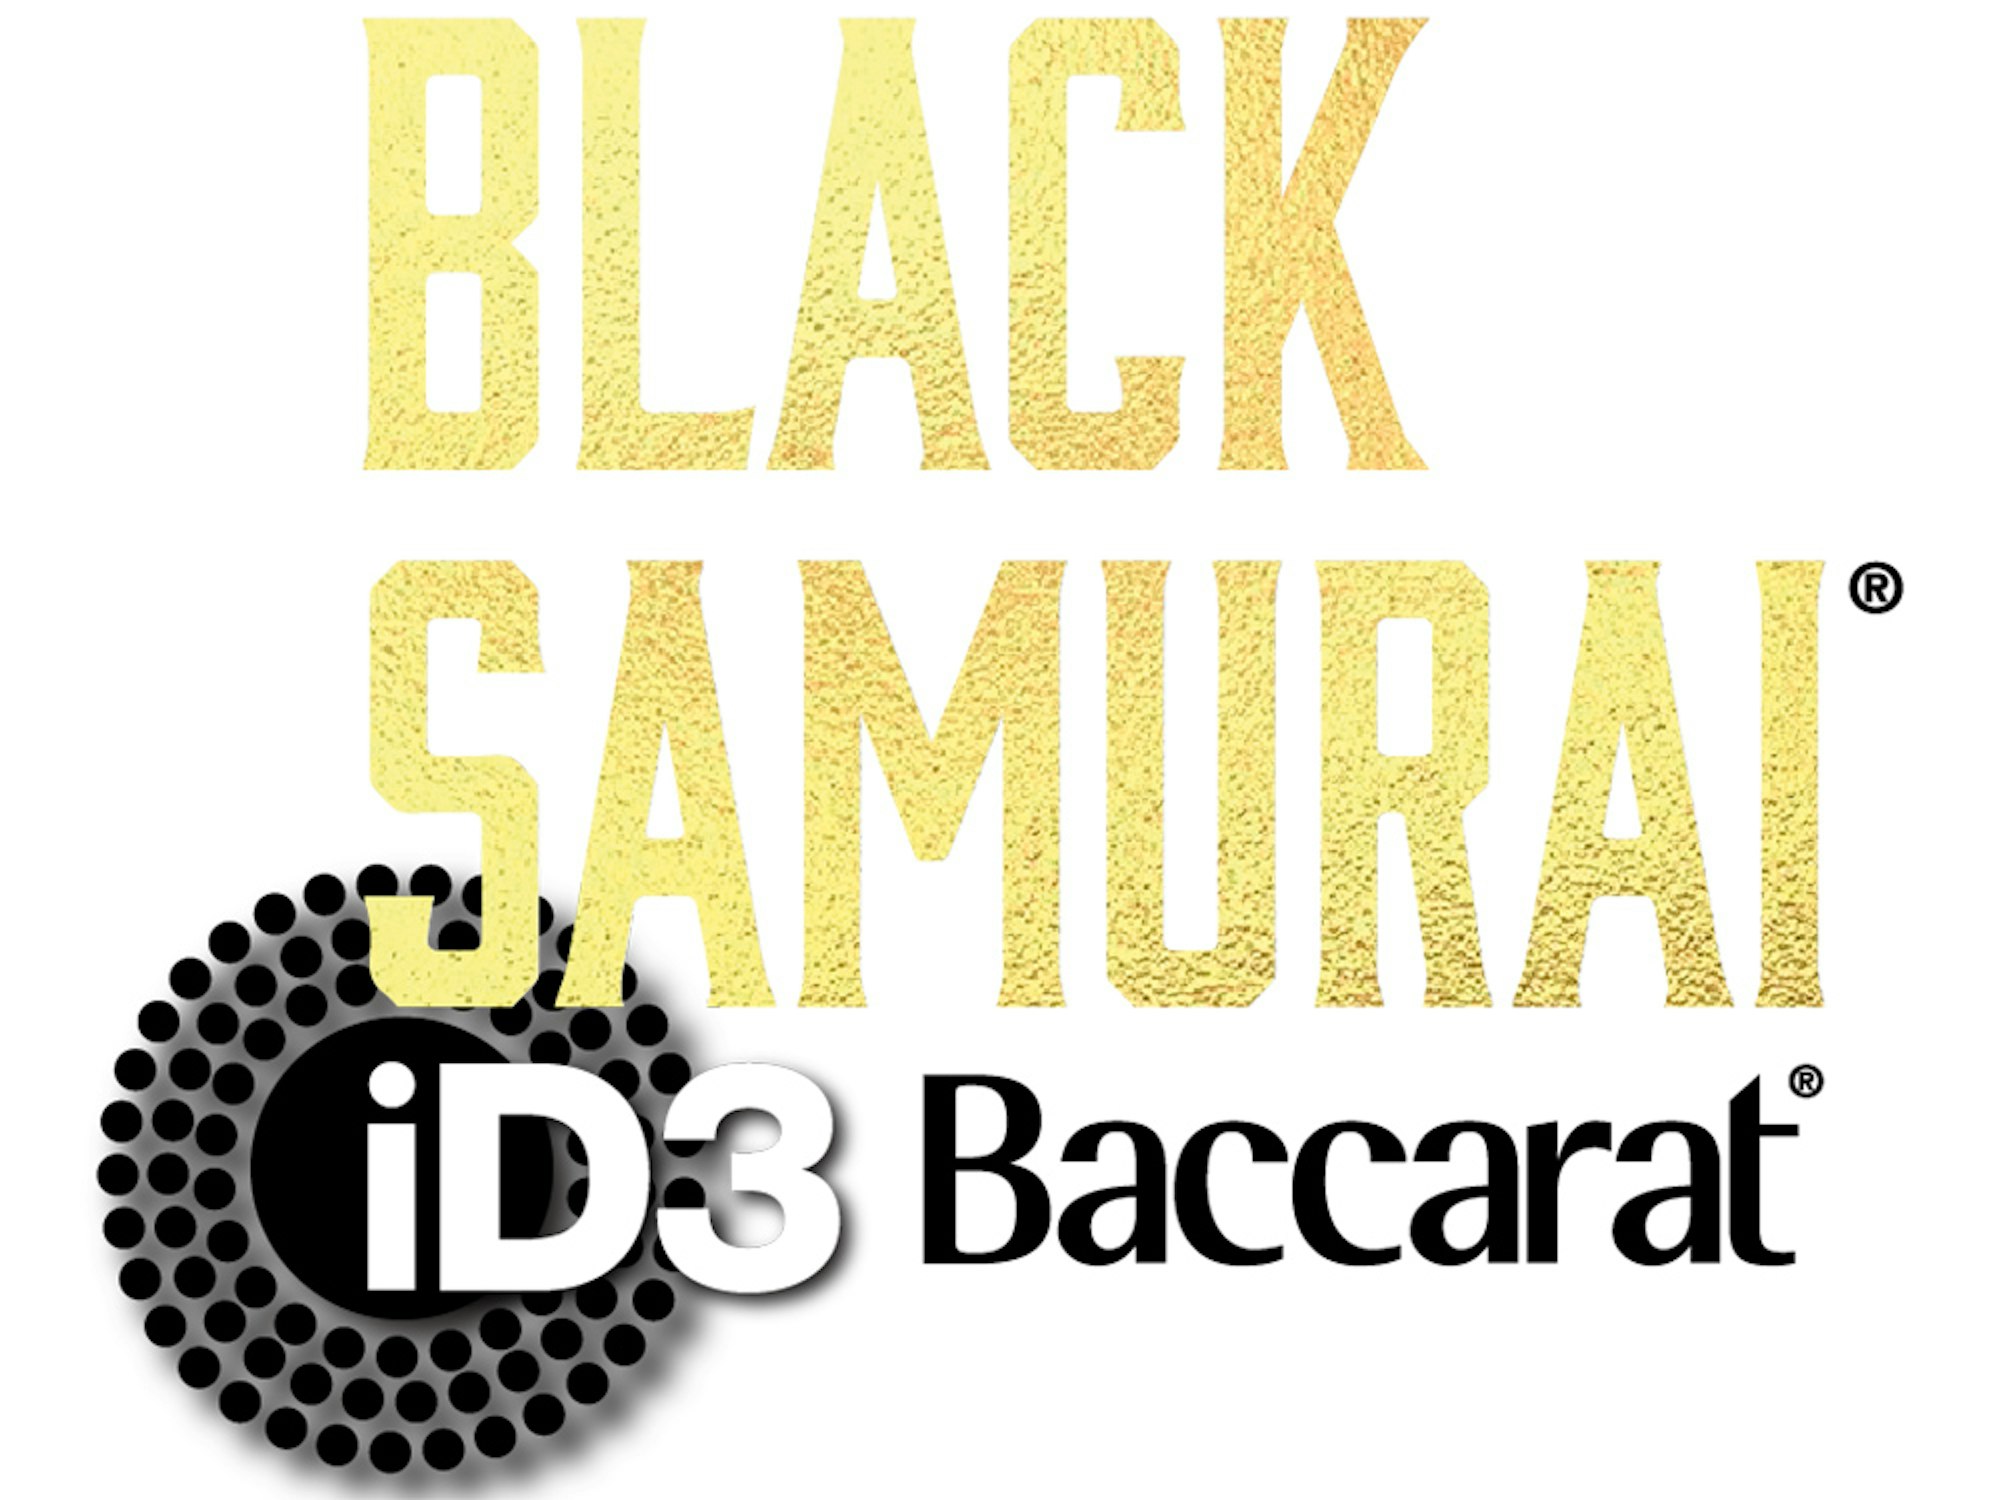 iD3 Black Samurai